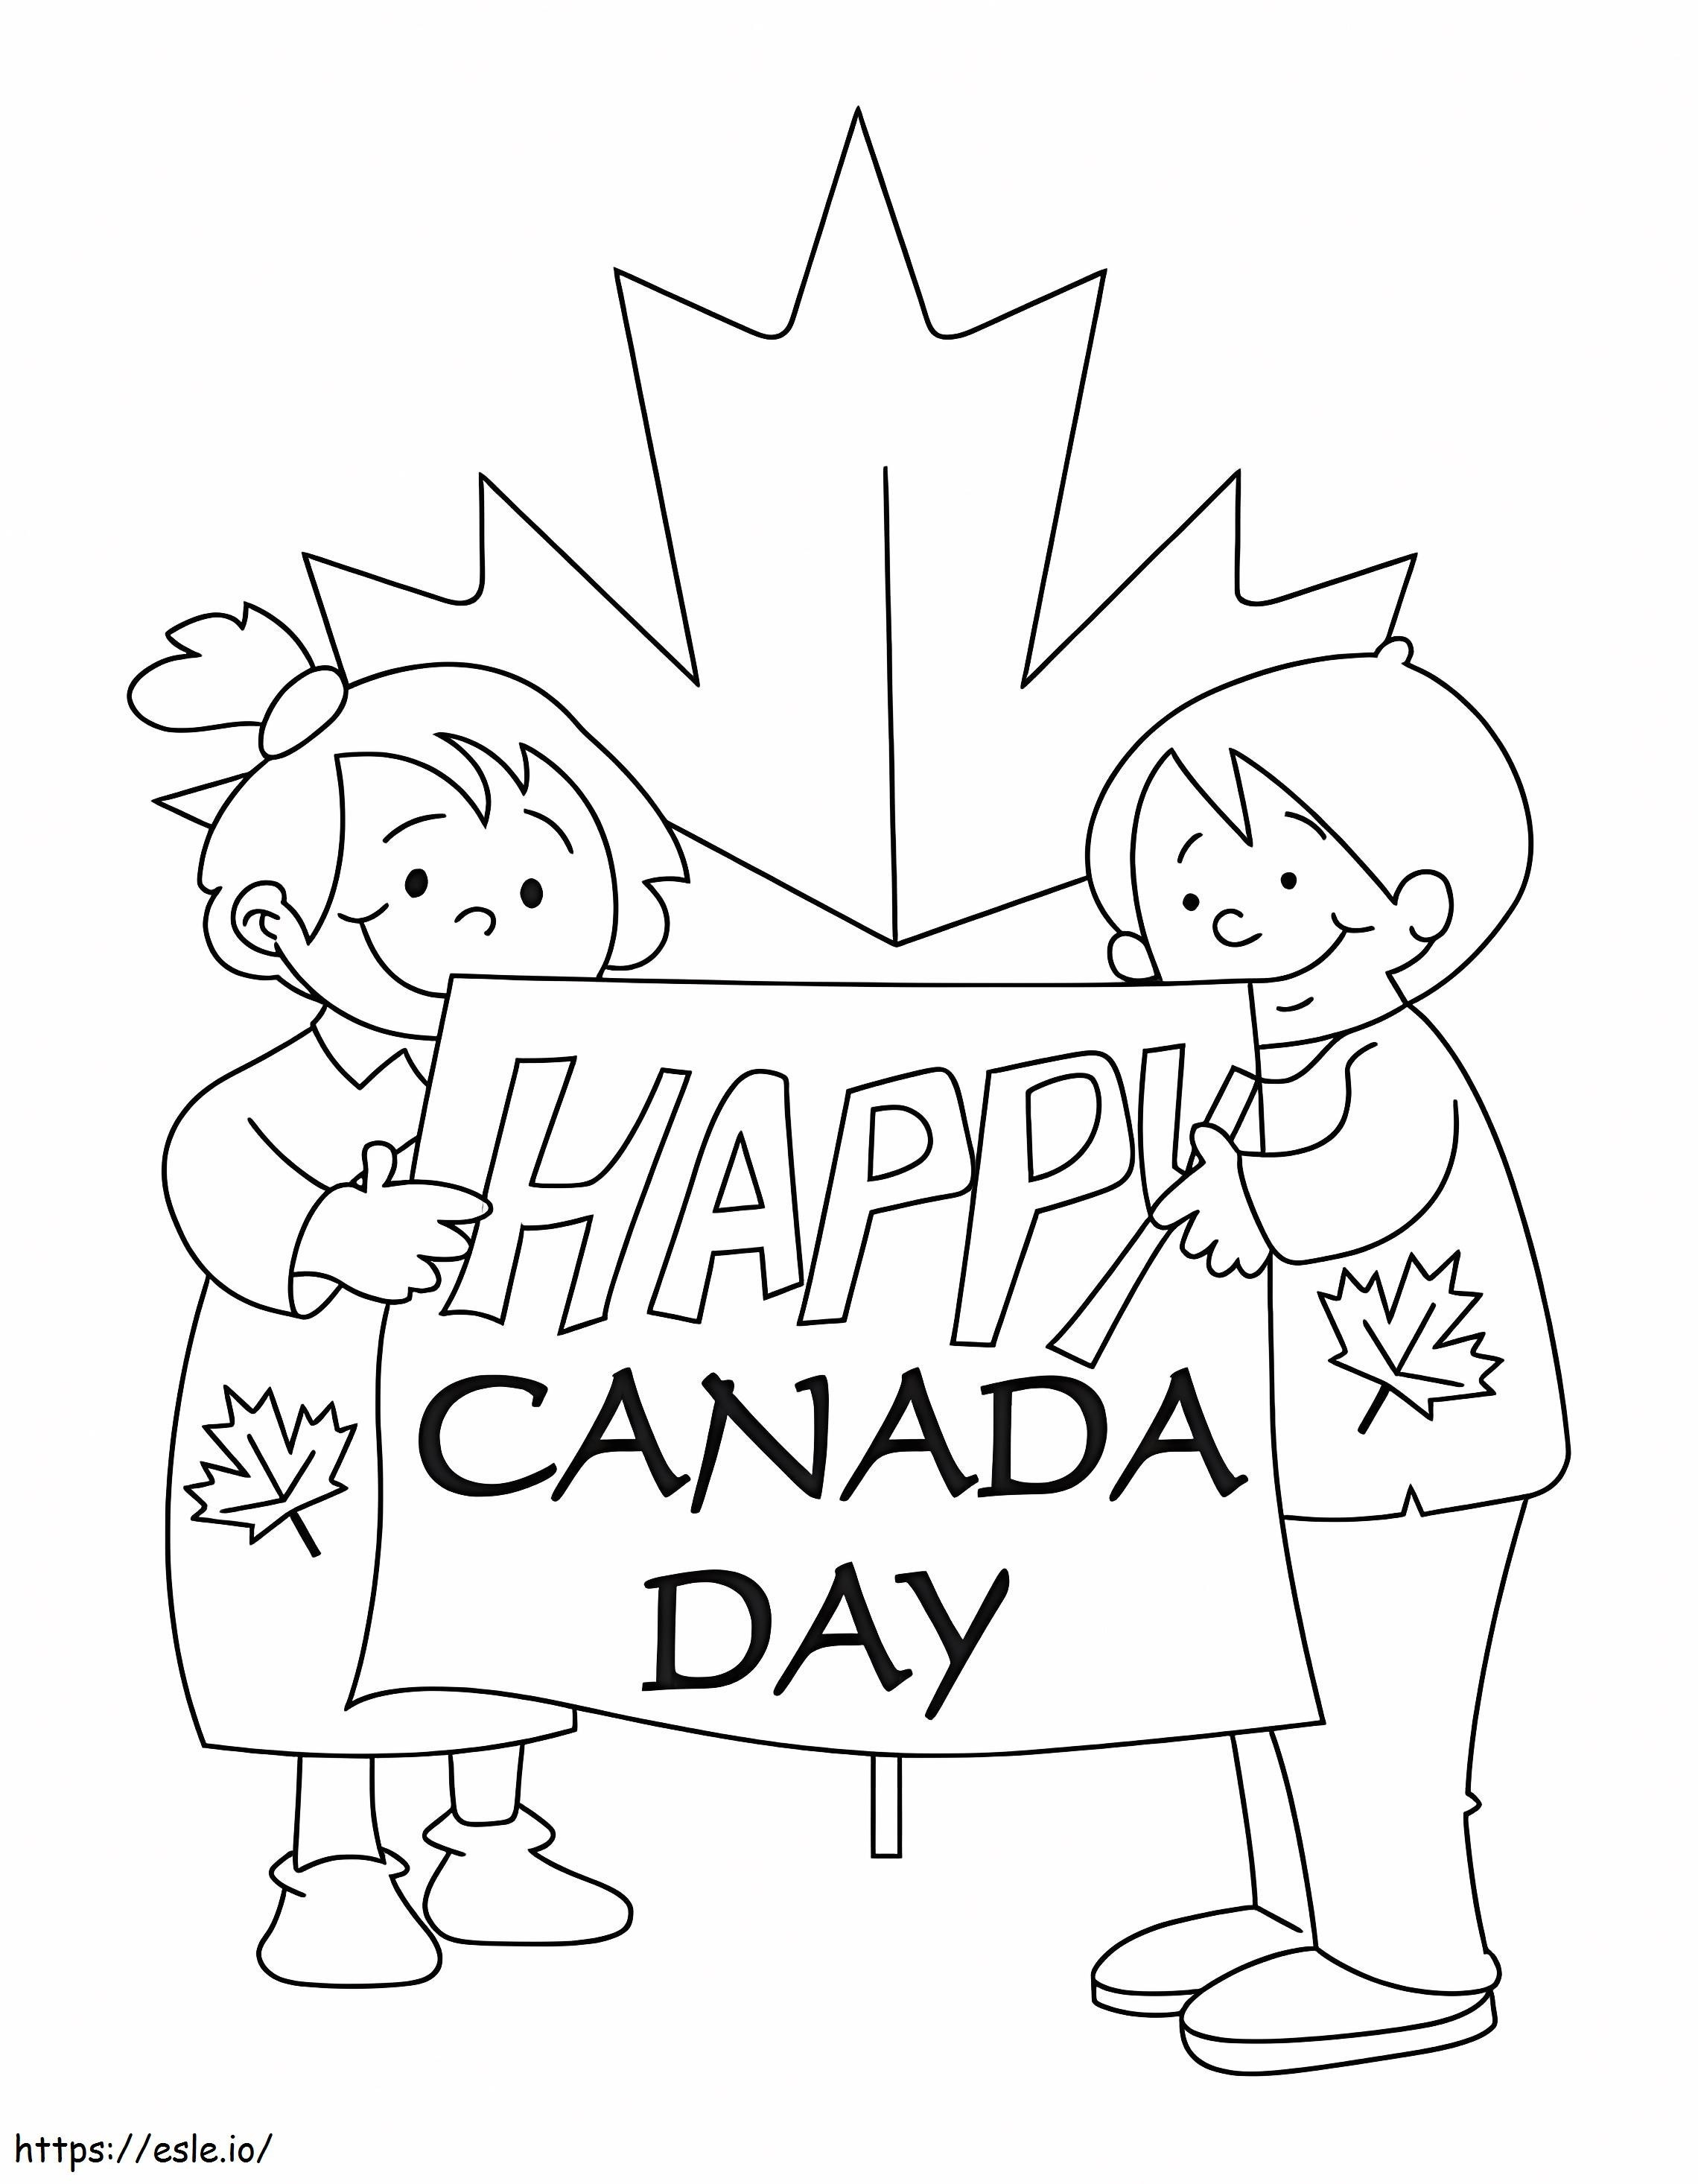 Kanada'nın 8. Günü Kutlu Olsun boyama